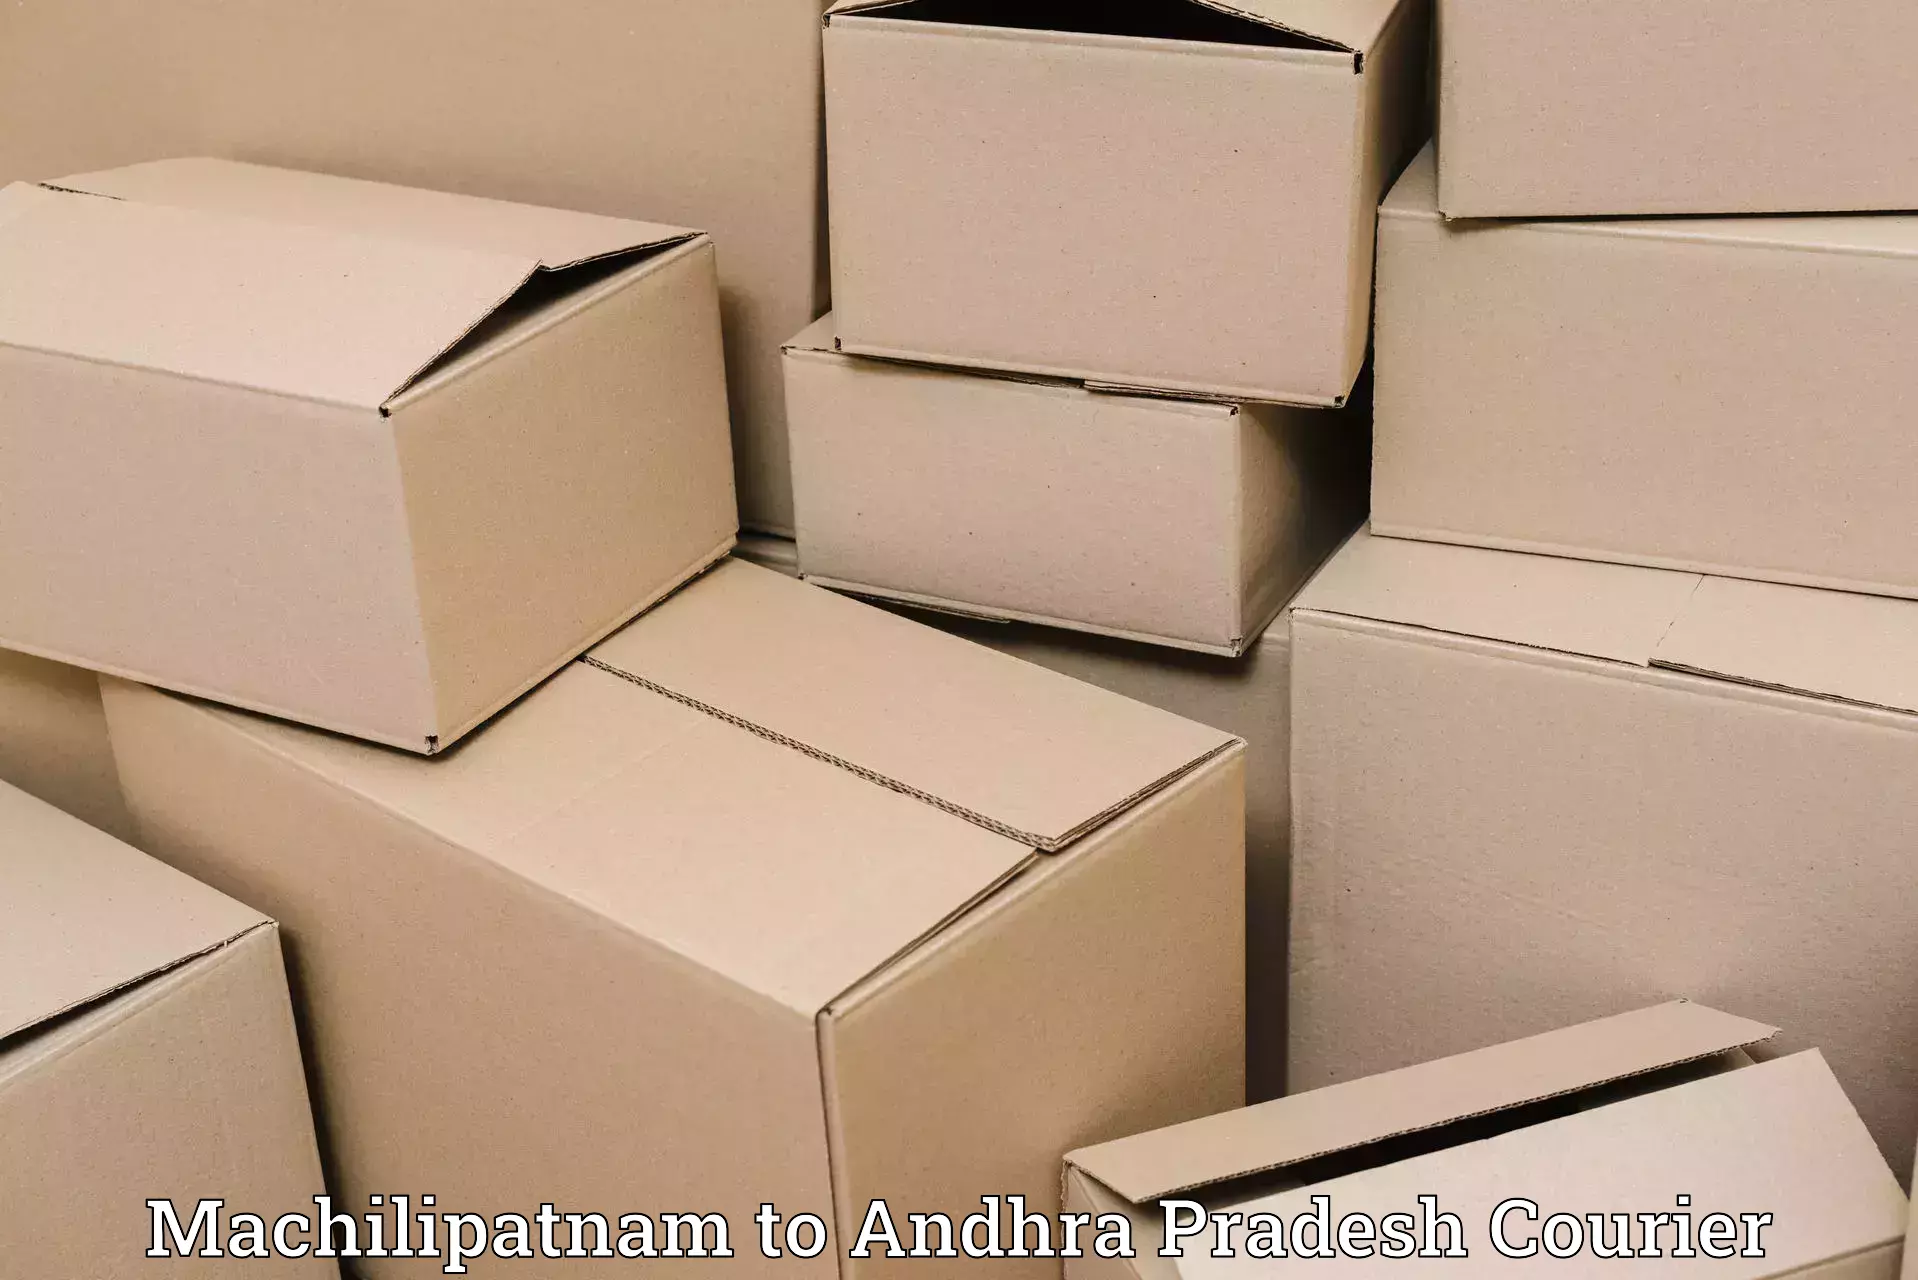 Efficient cargo handling Machilipatnam to Avanigadda